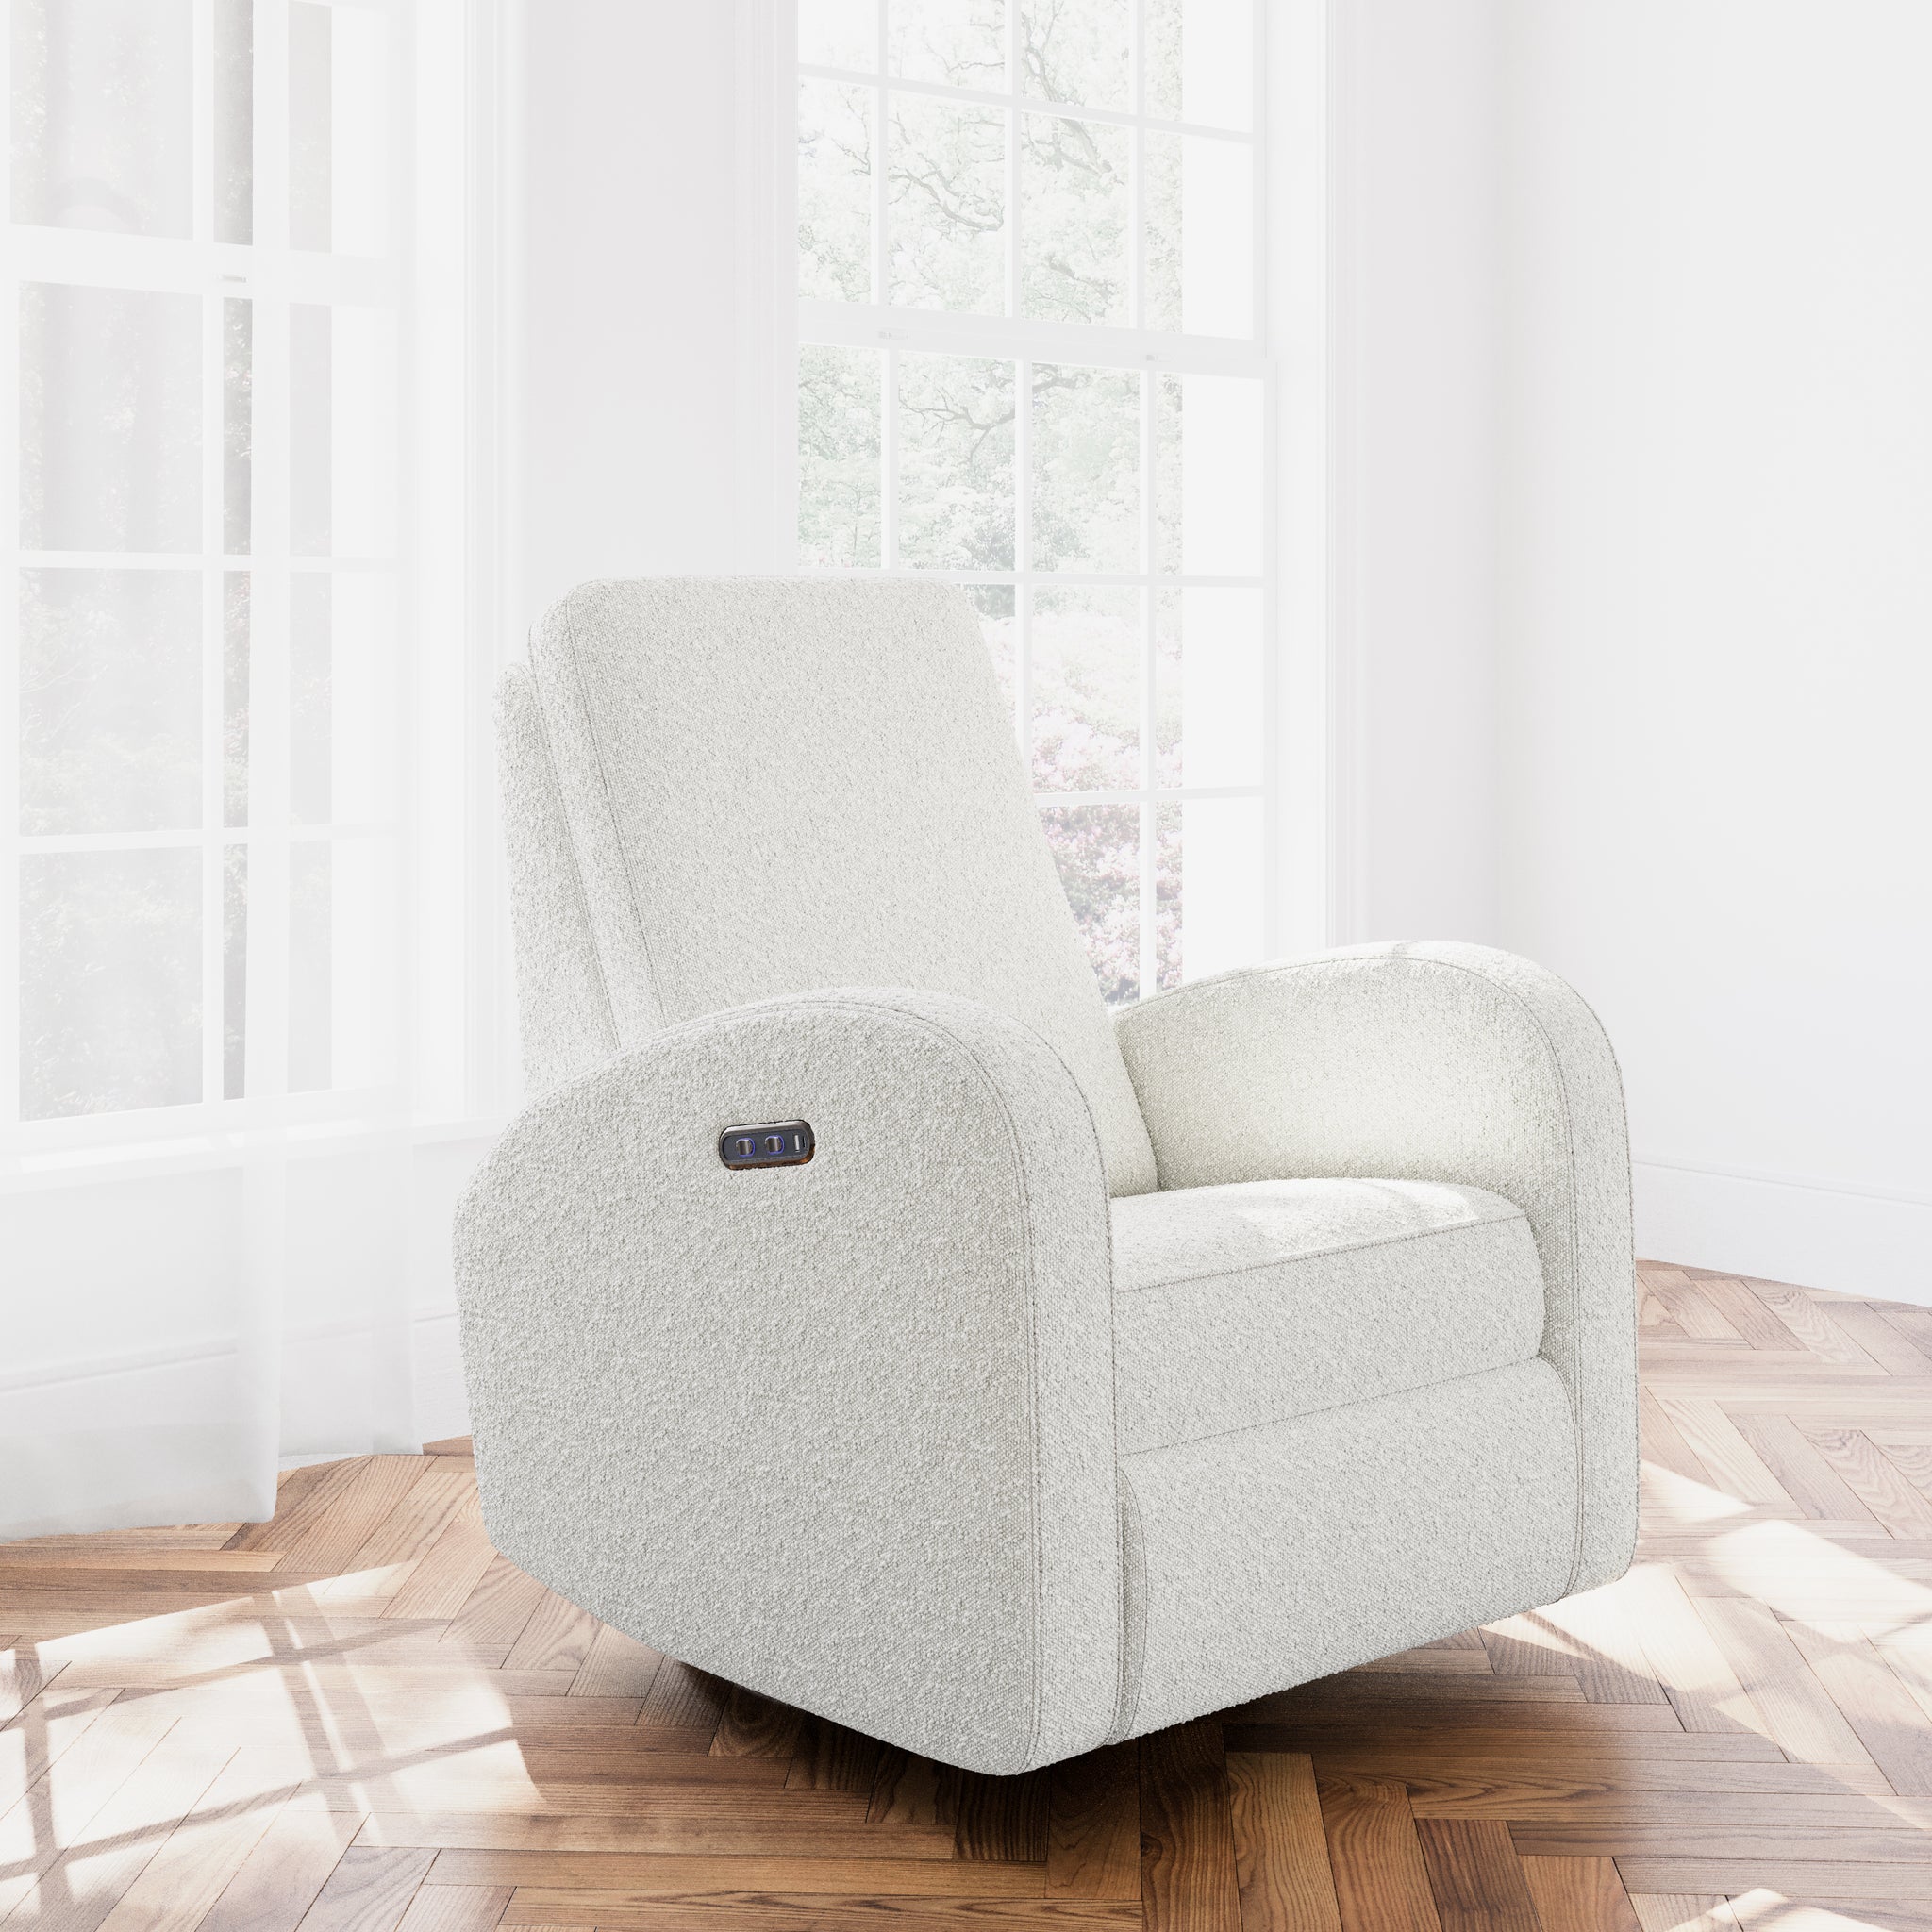 White upholstered chair in room setting on hardwood floor